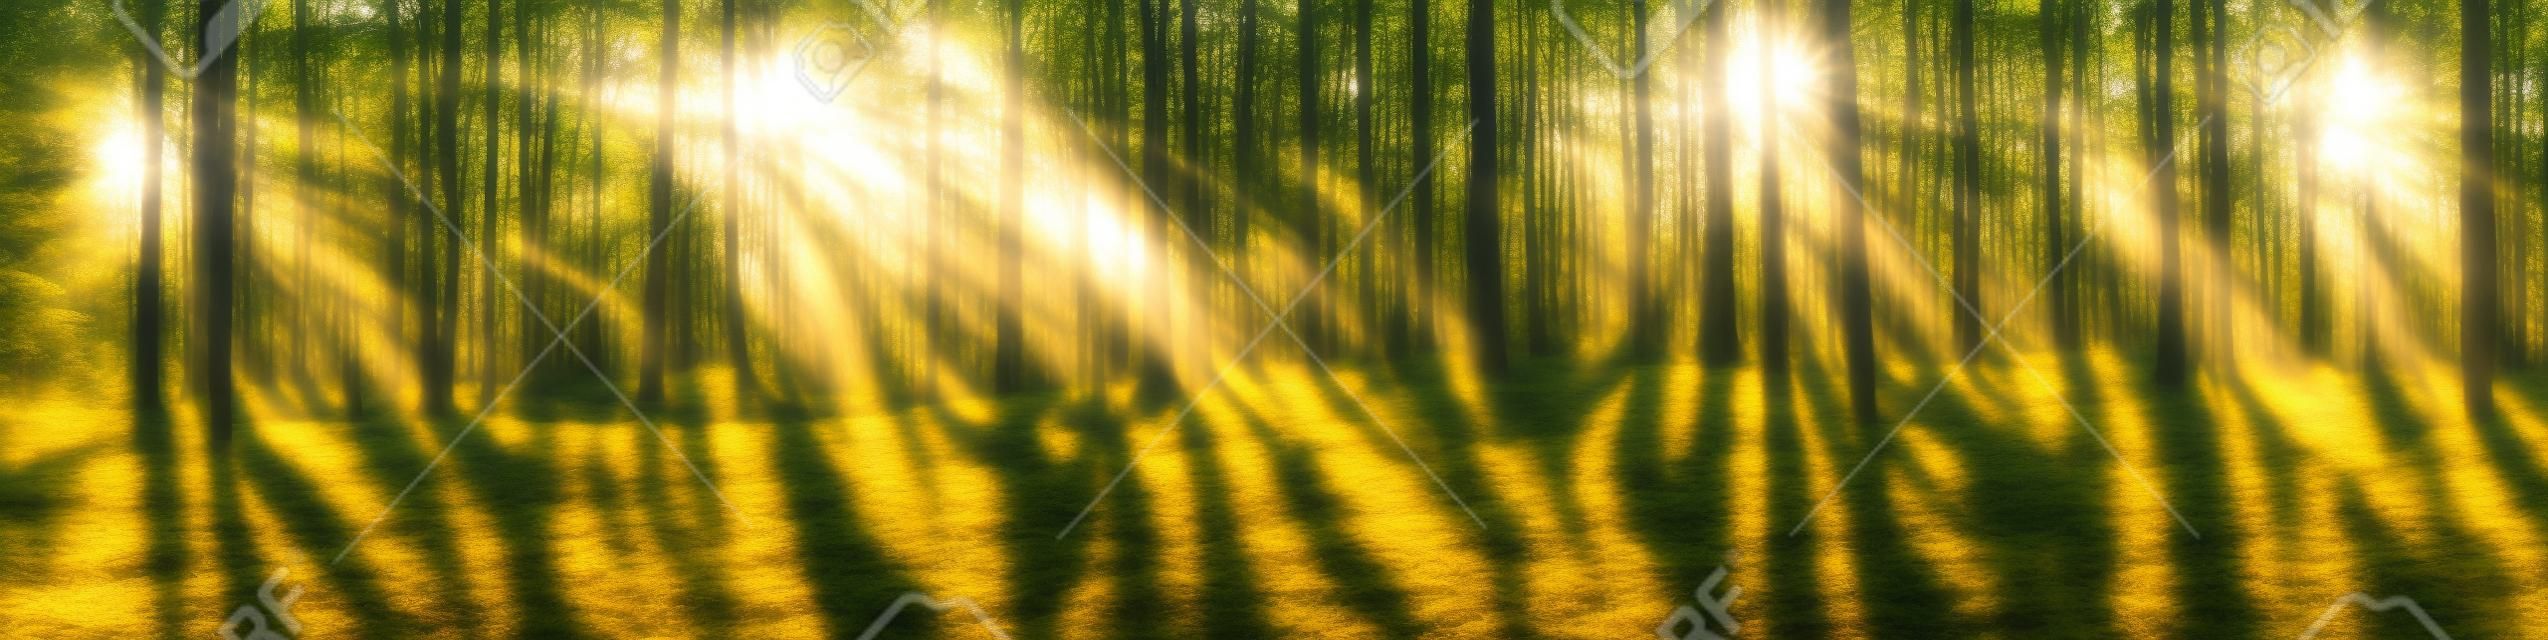 밝은 태양이 나무를 통해 빛나는 아름다운 숲 파노라마